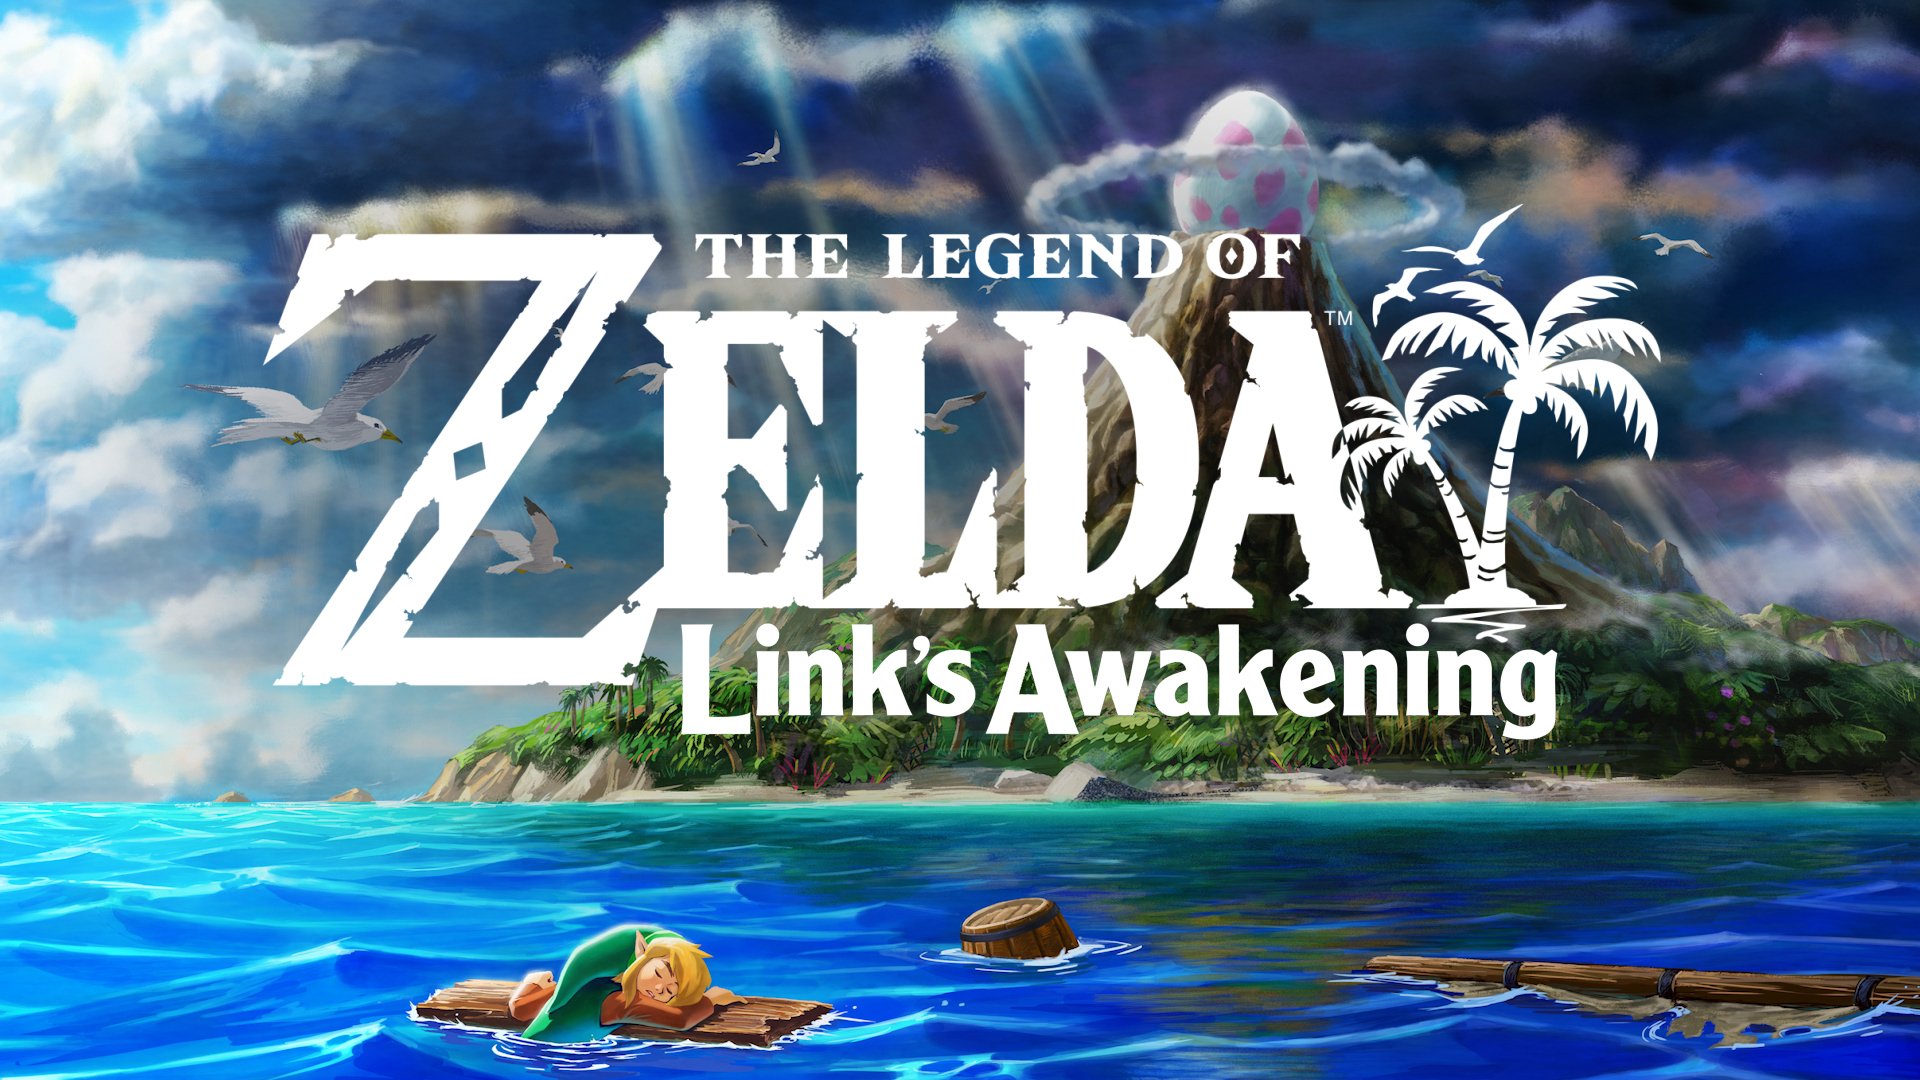 The Legend of Zelda Links Awakening Instruments of the Sirens HD wallpaper   Pxfuel